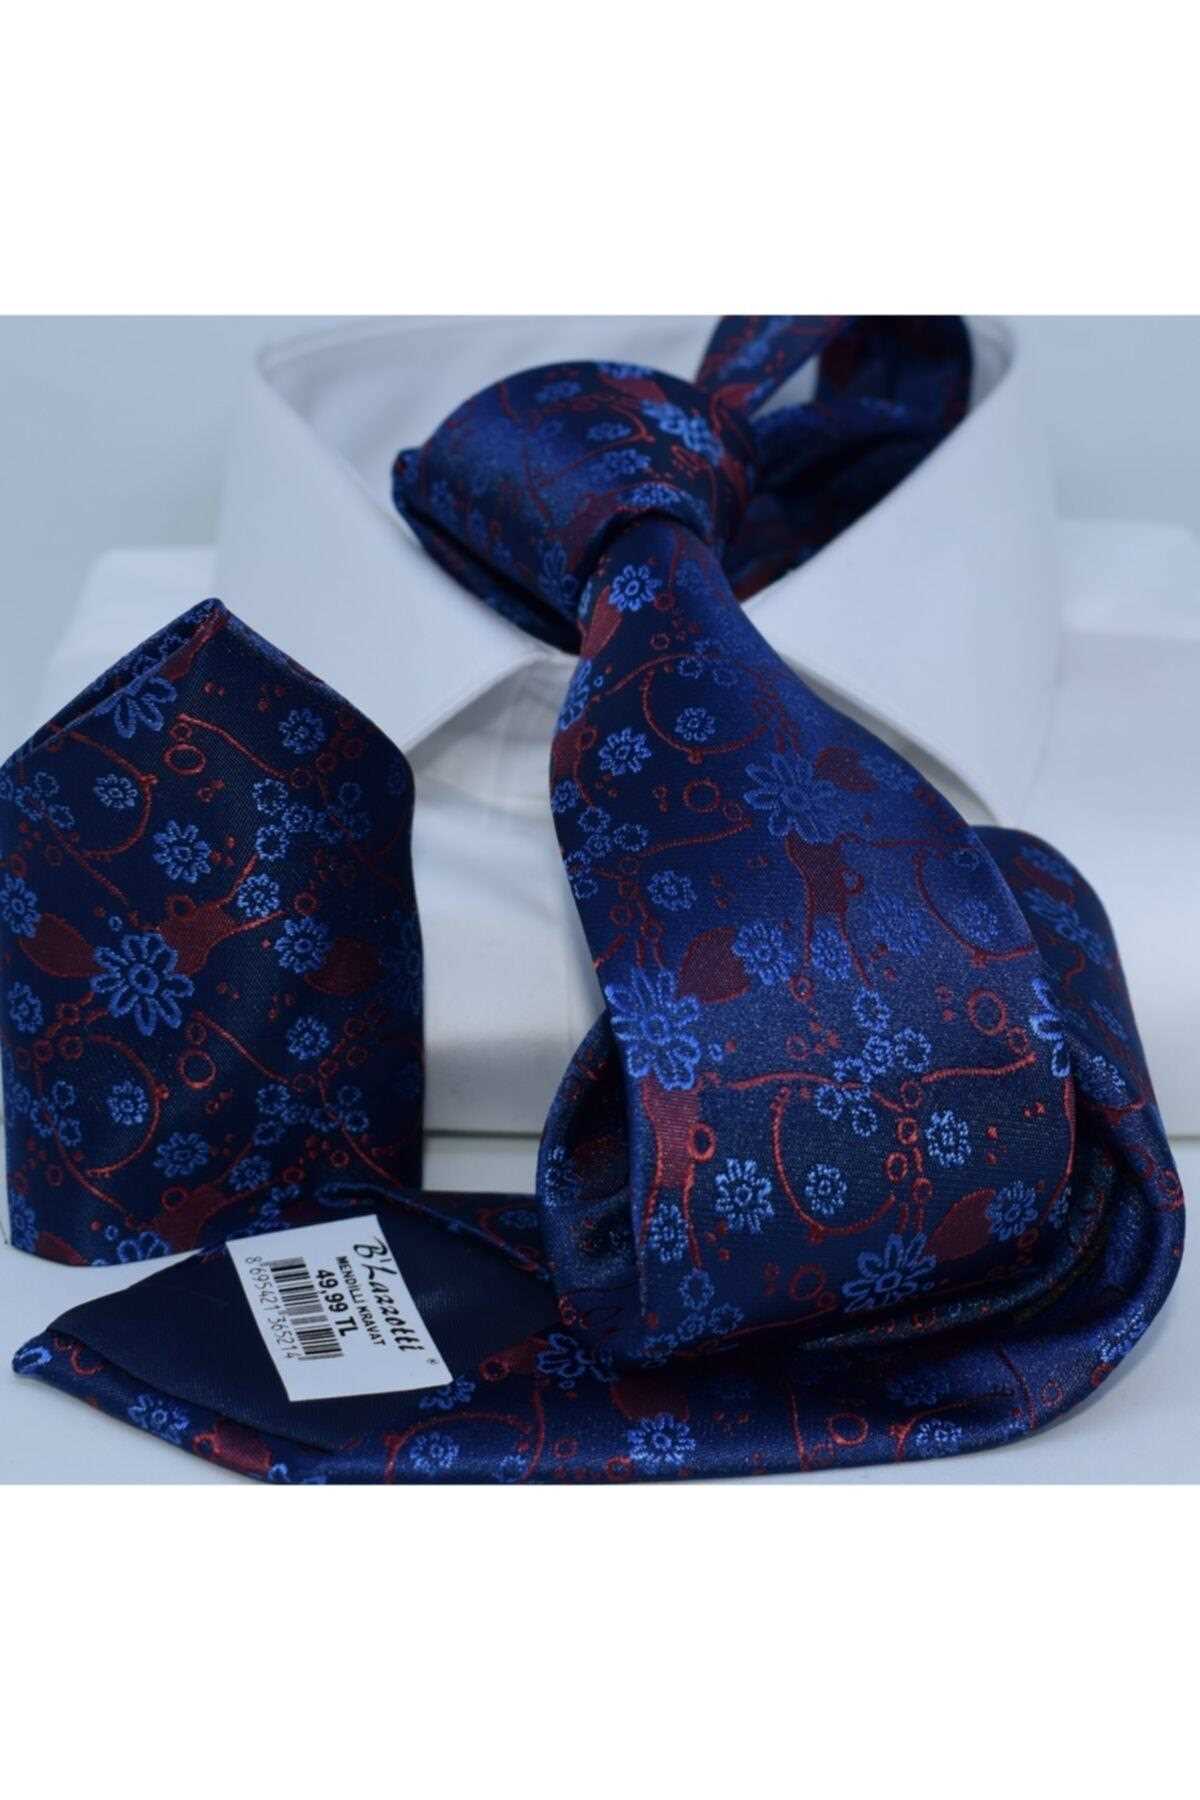 فروشگاه کراوات تابستانی شیک Blazzotti رنگ لاجوردی کد VE رنگ زرشکی ty104547369